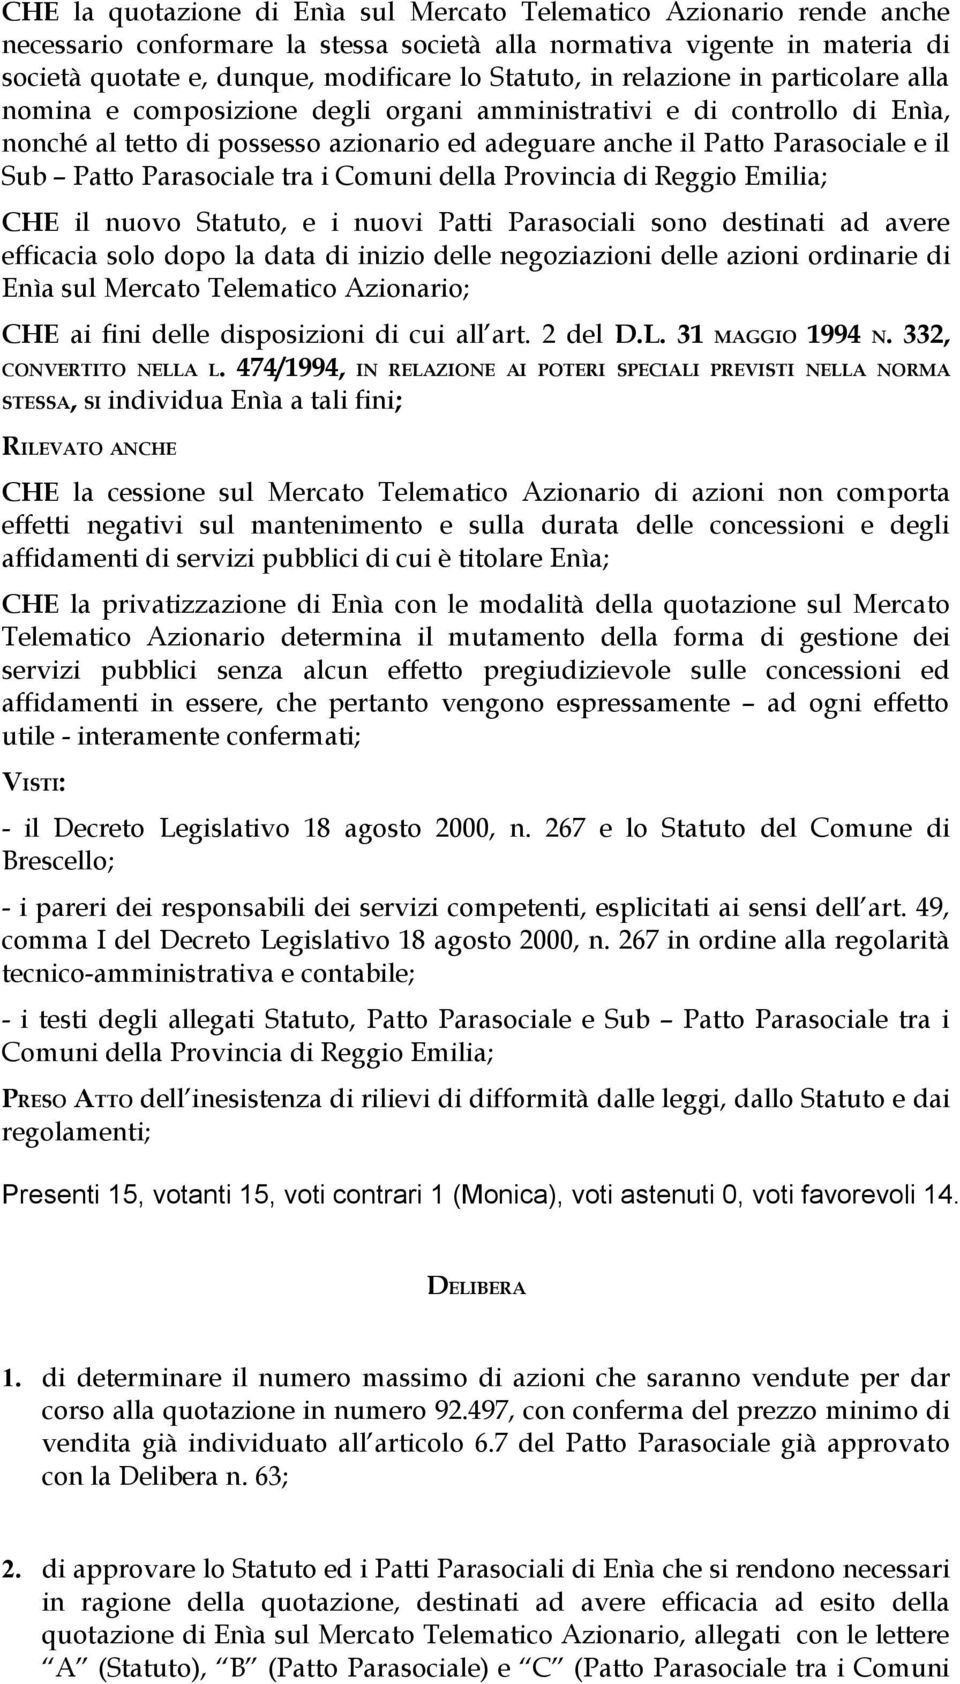 arasociale tra i Comuni della rovincia di Reggio Emilia; CHE il nuovo Statuto, e i nuovi atti arasociali sono destinati ad avere efficacia solo dopo la data di inizio delle negoziazioni delle azioni